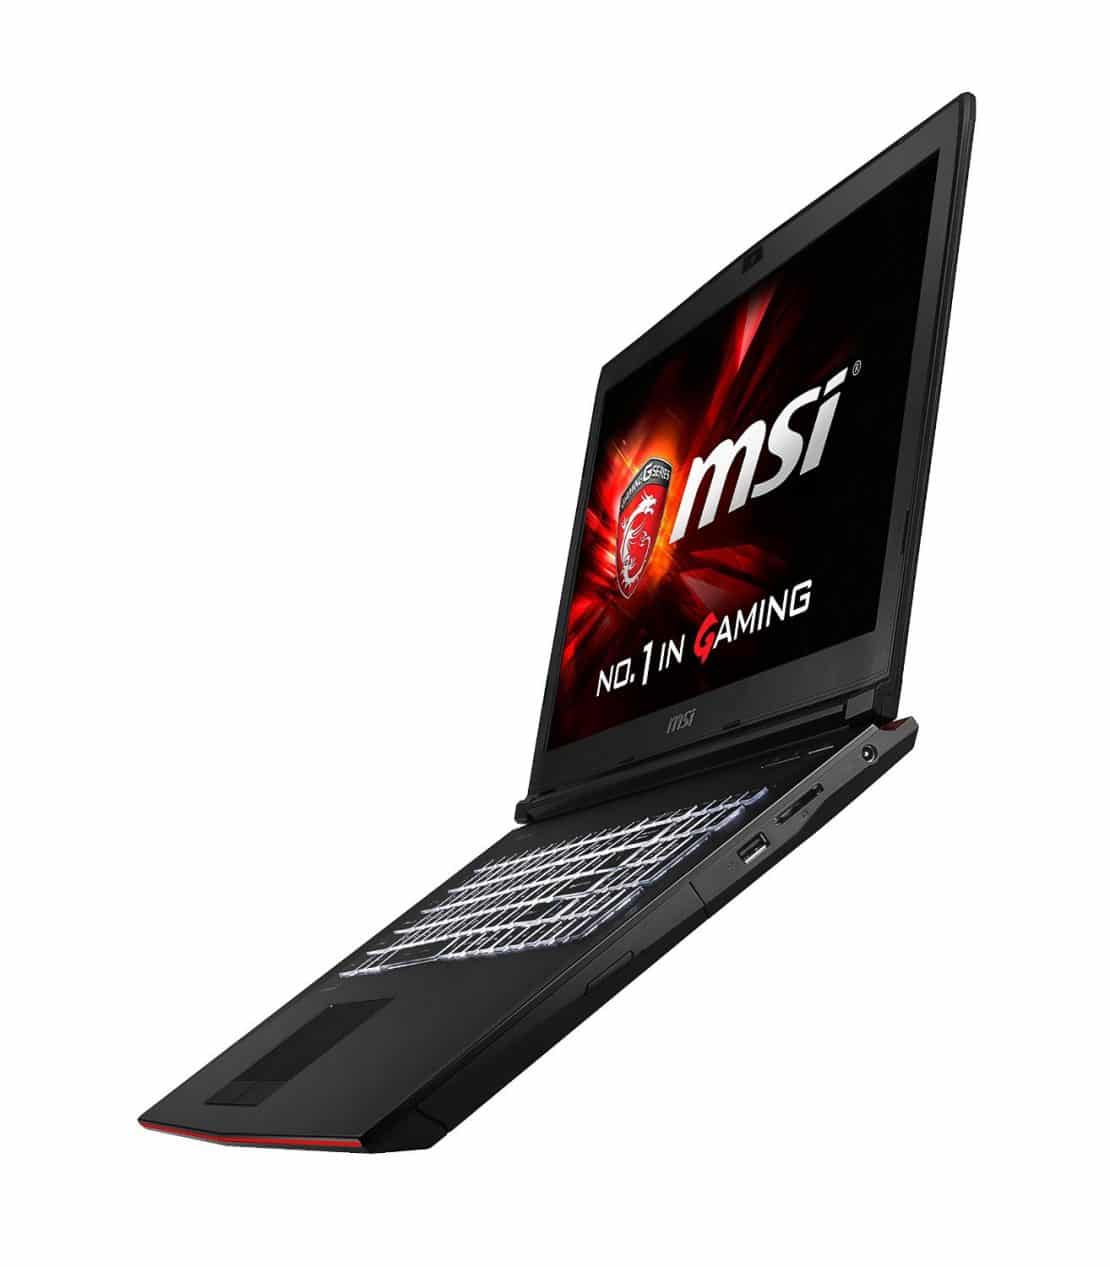 MSI GE72 APACHE-264 Budget Gaming Laptop